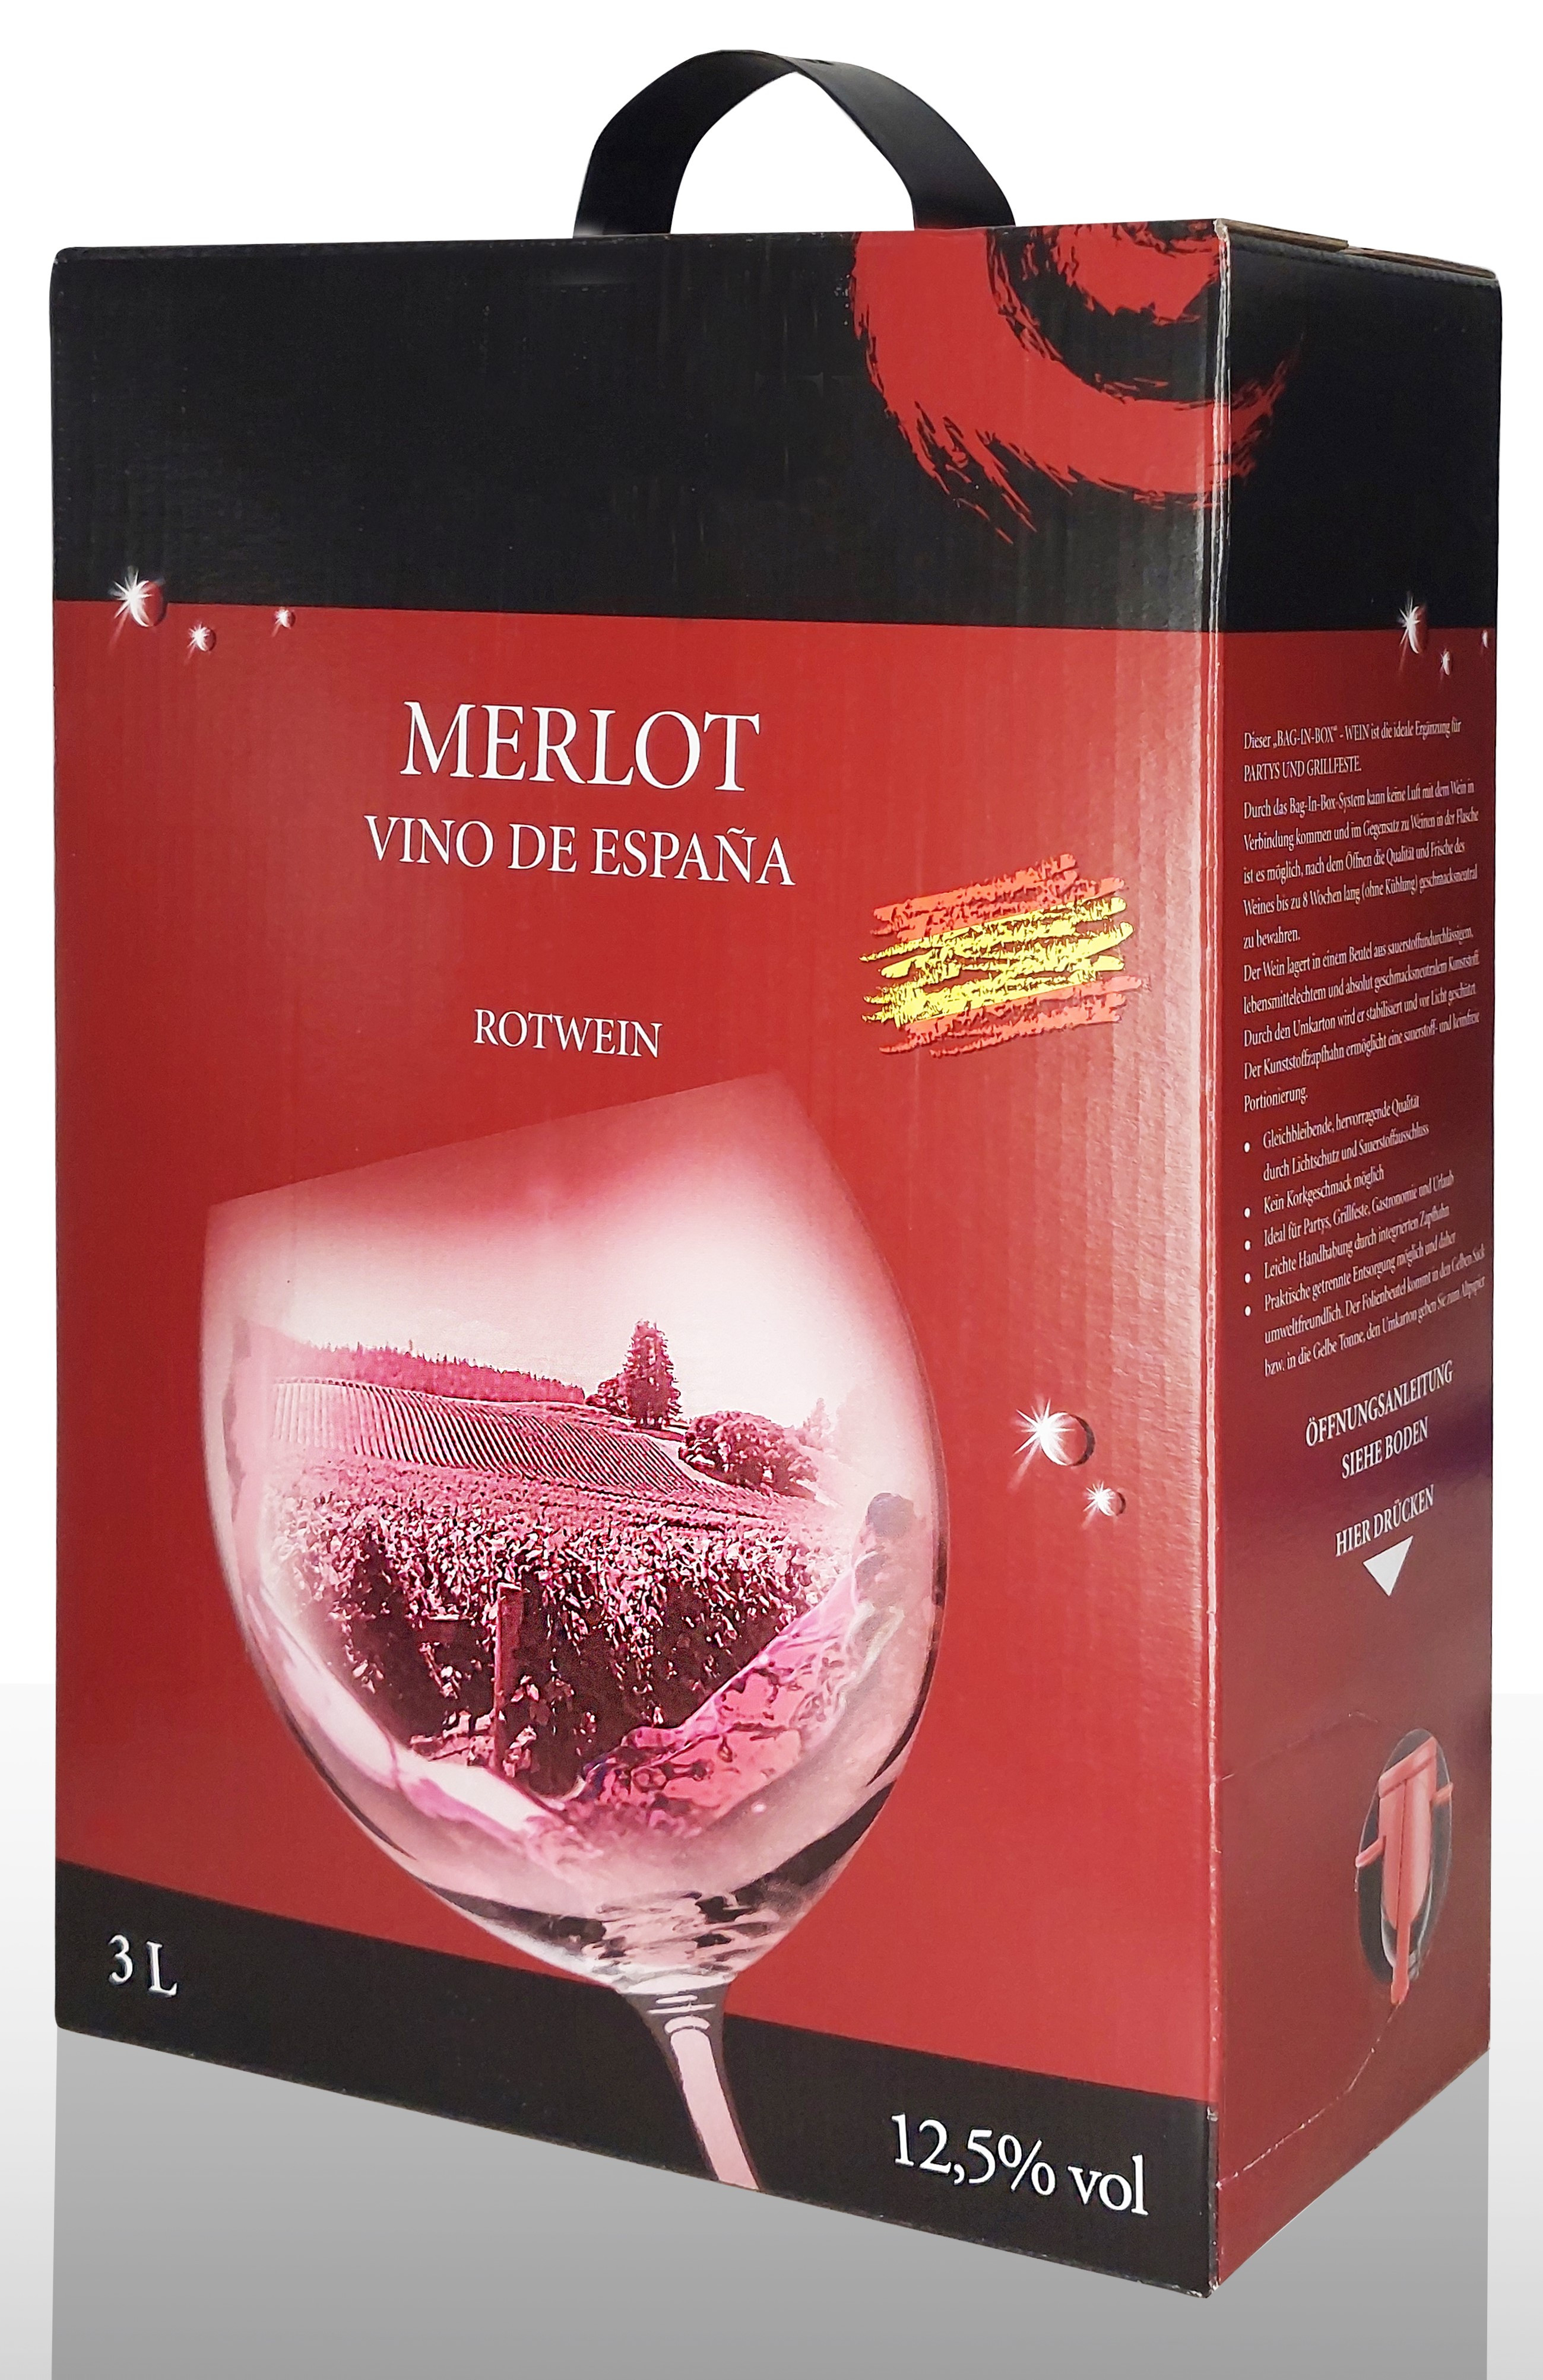 Bag in Merlot Box -Vino - Weine - Premium ,Weinhandel,Qualitätsweine Wein, Weine Delicato